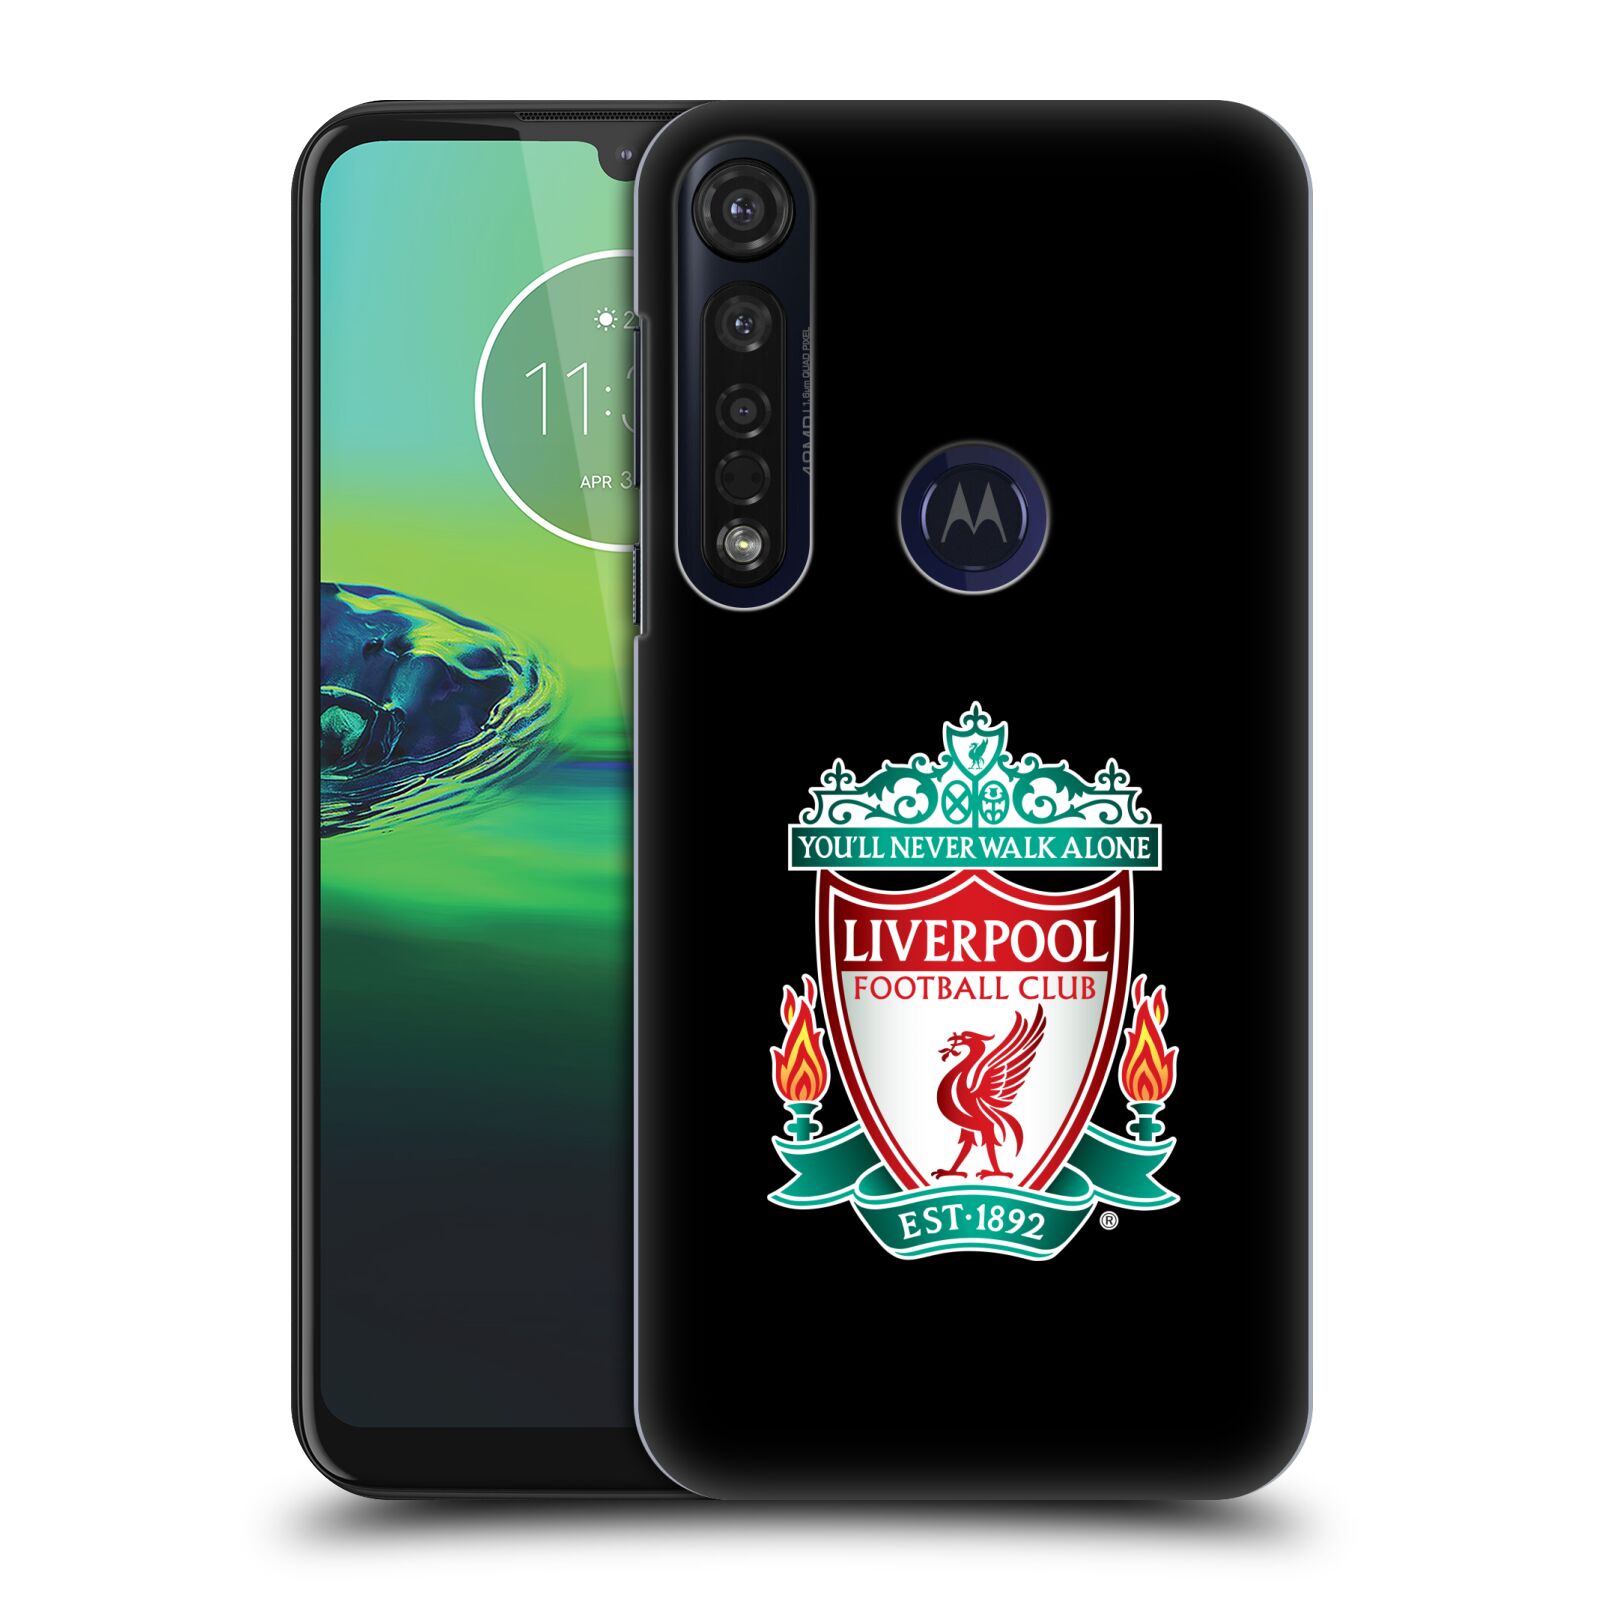 Pouzdro na mobil Motorola Moto G8 PLUS - HEAD CASE - Fotbalový klub Liverpool barevný znak černé pozadí